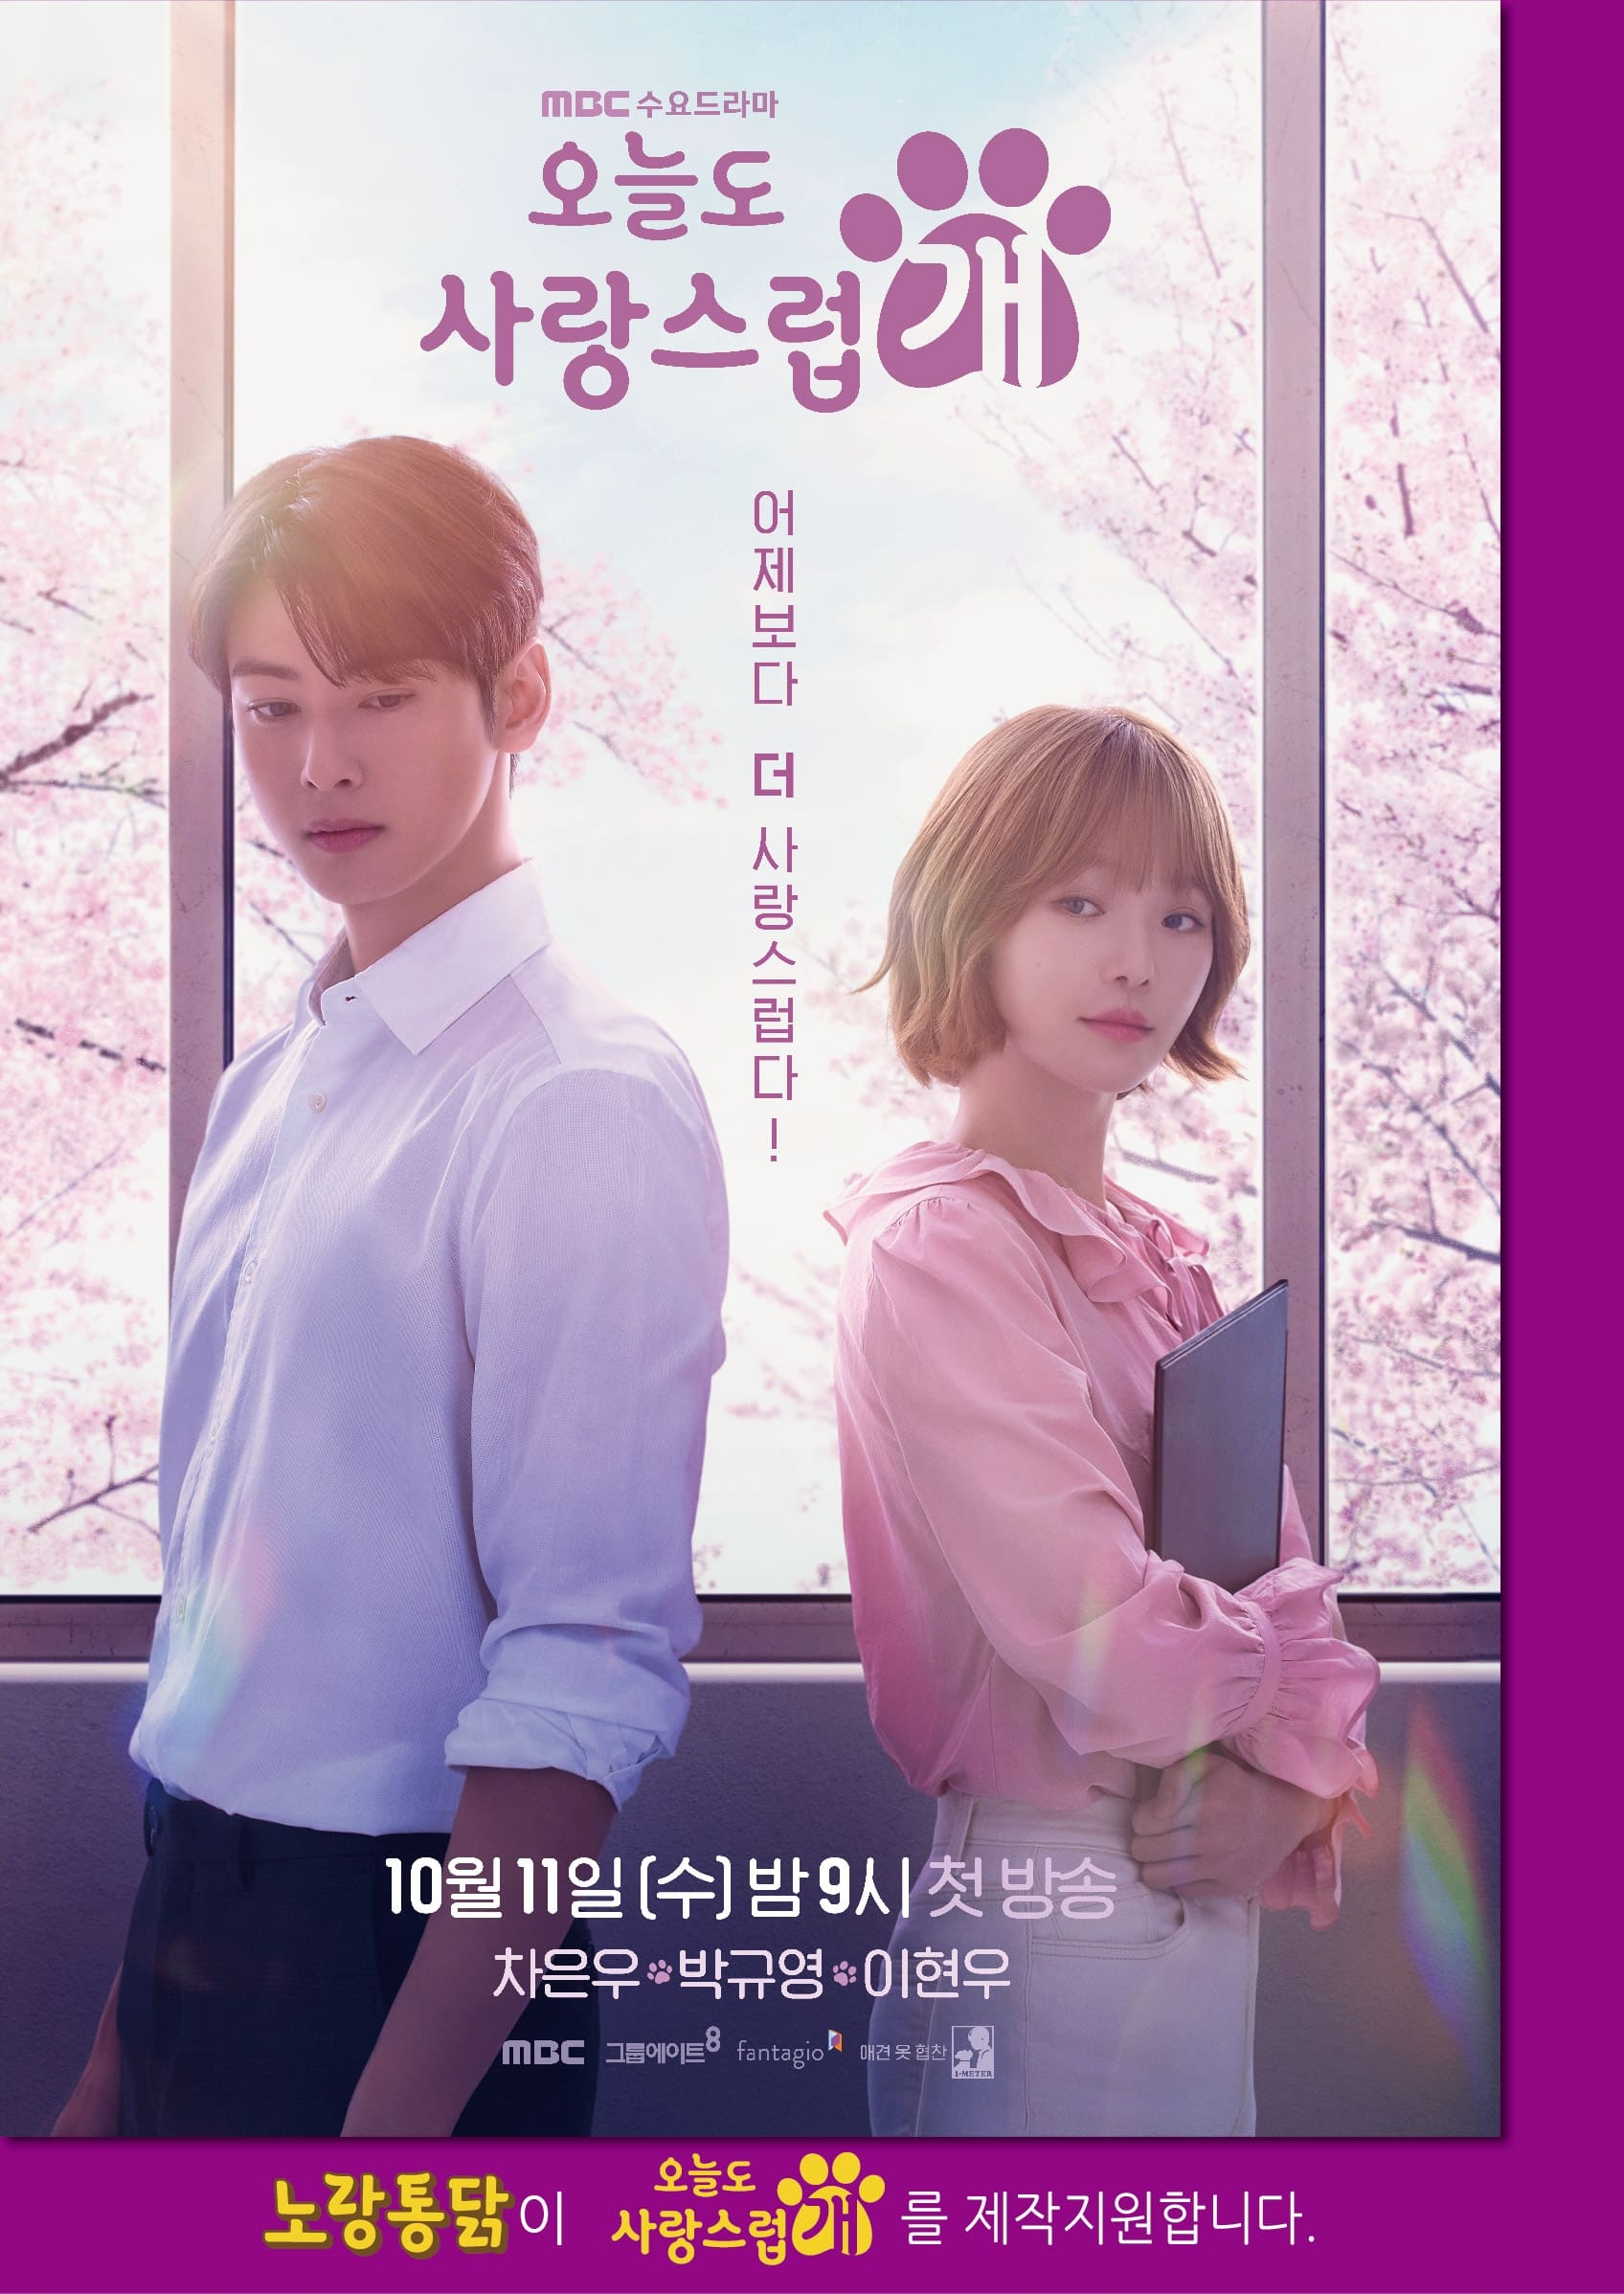 [생활경제 이슈] 노랑통닭, MBC 수요드라마 ‘오늘도 사랑스럽개’ 제작 지원 外